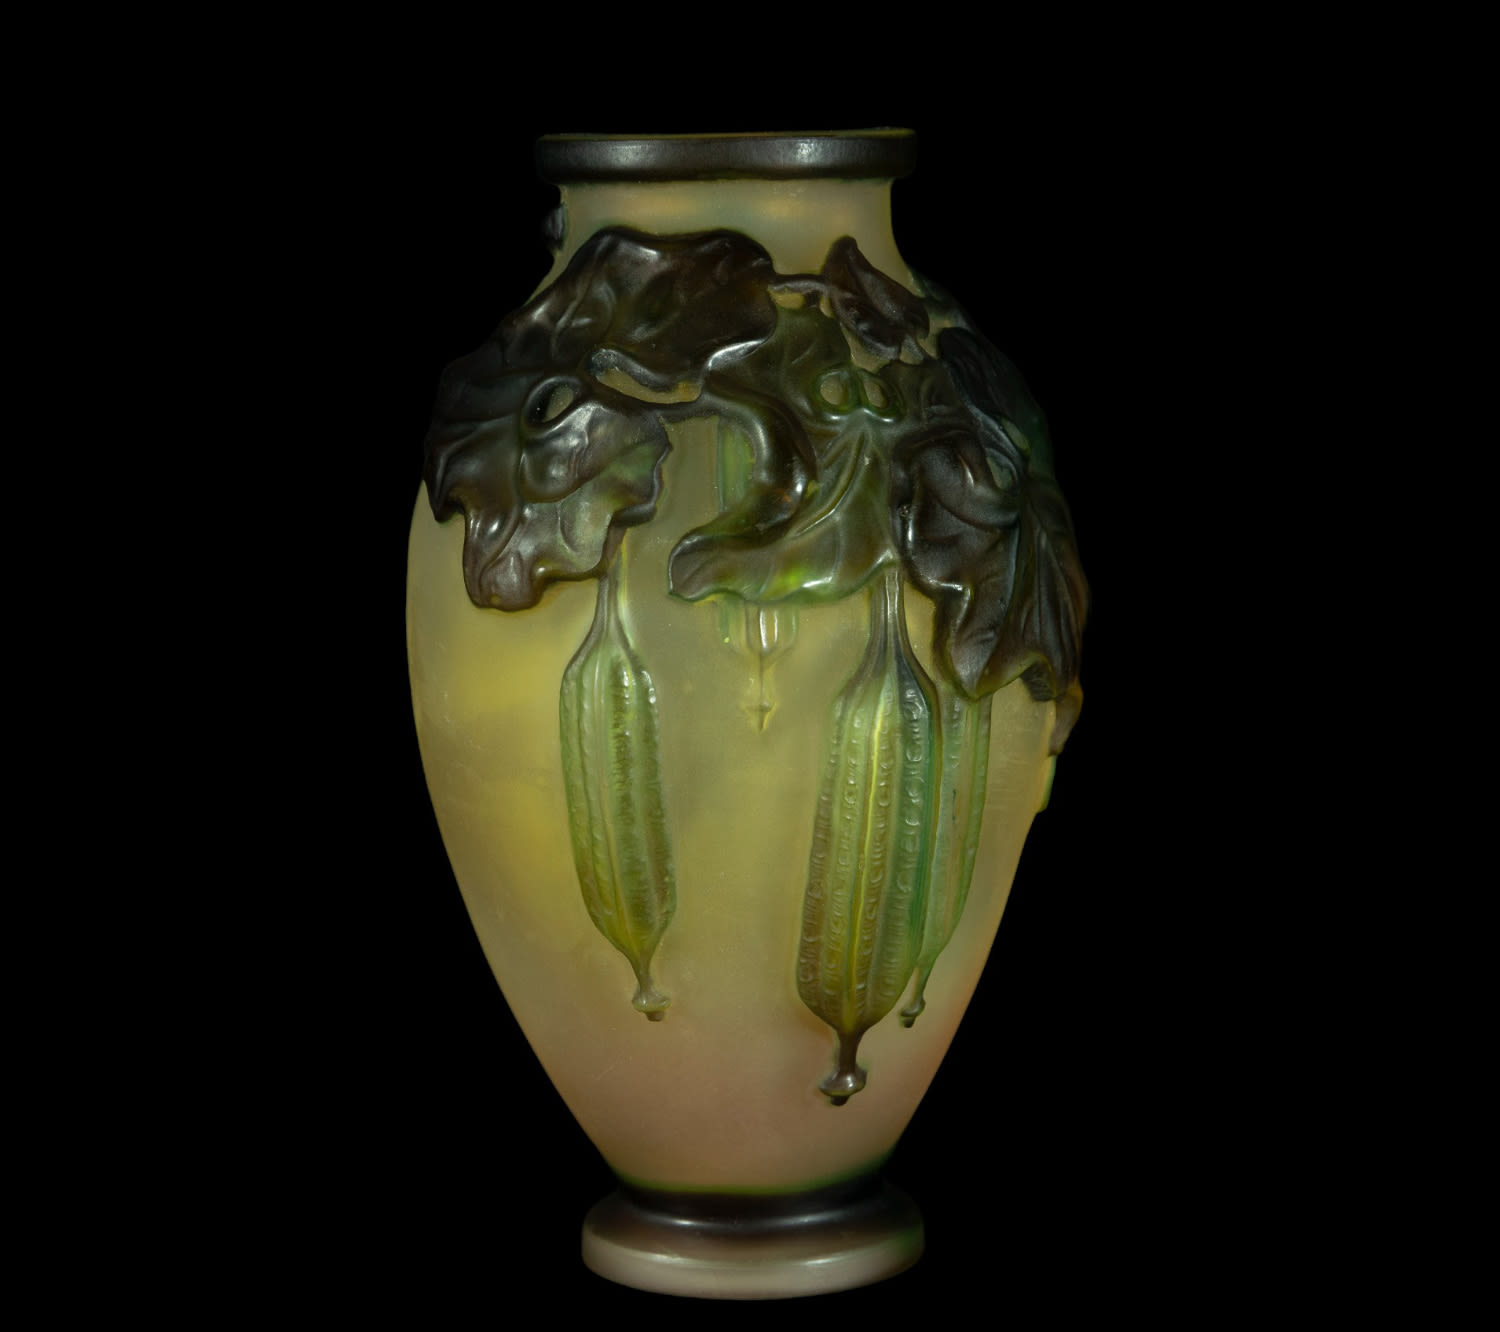 Exquisite Art Nouveau Gallé vase in blown glass and polychrome vitreous paste, 1900s - 1920s